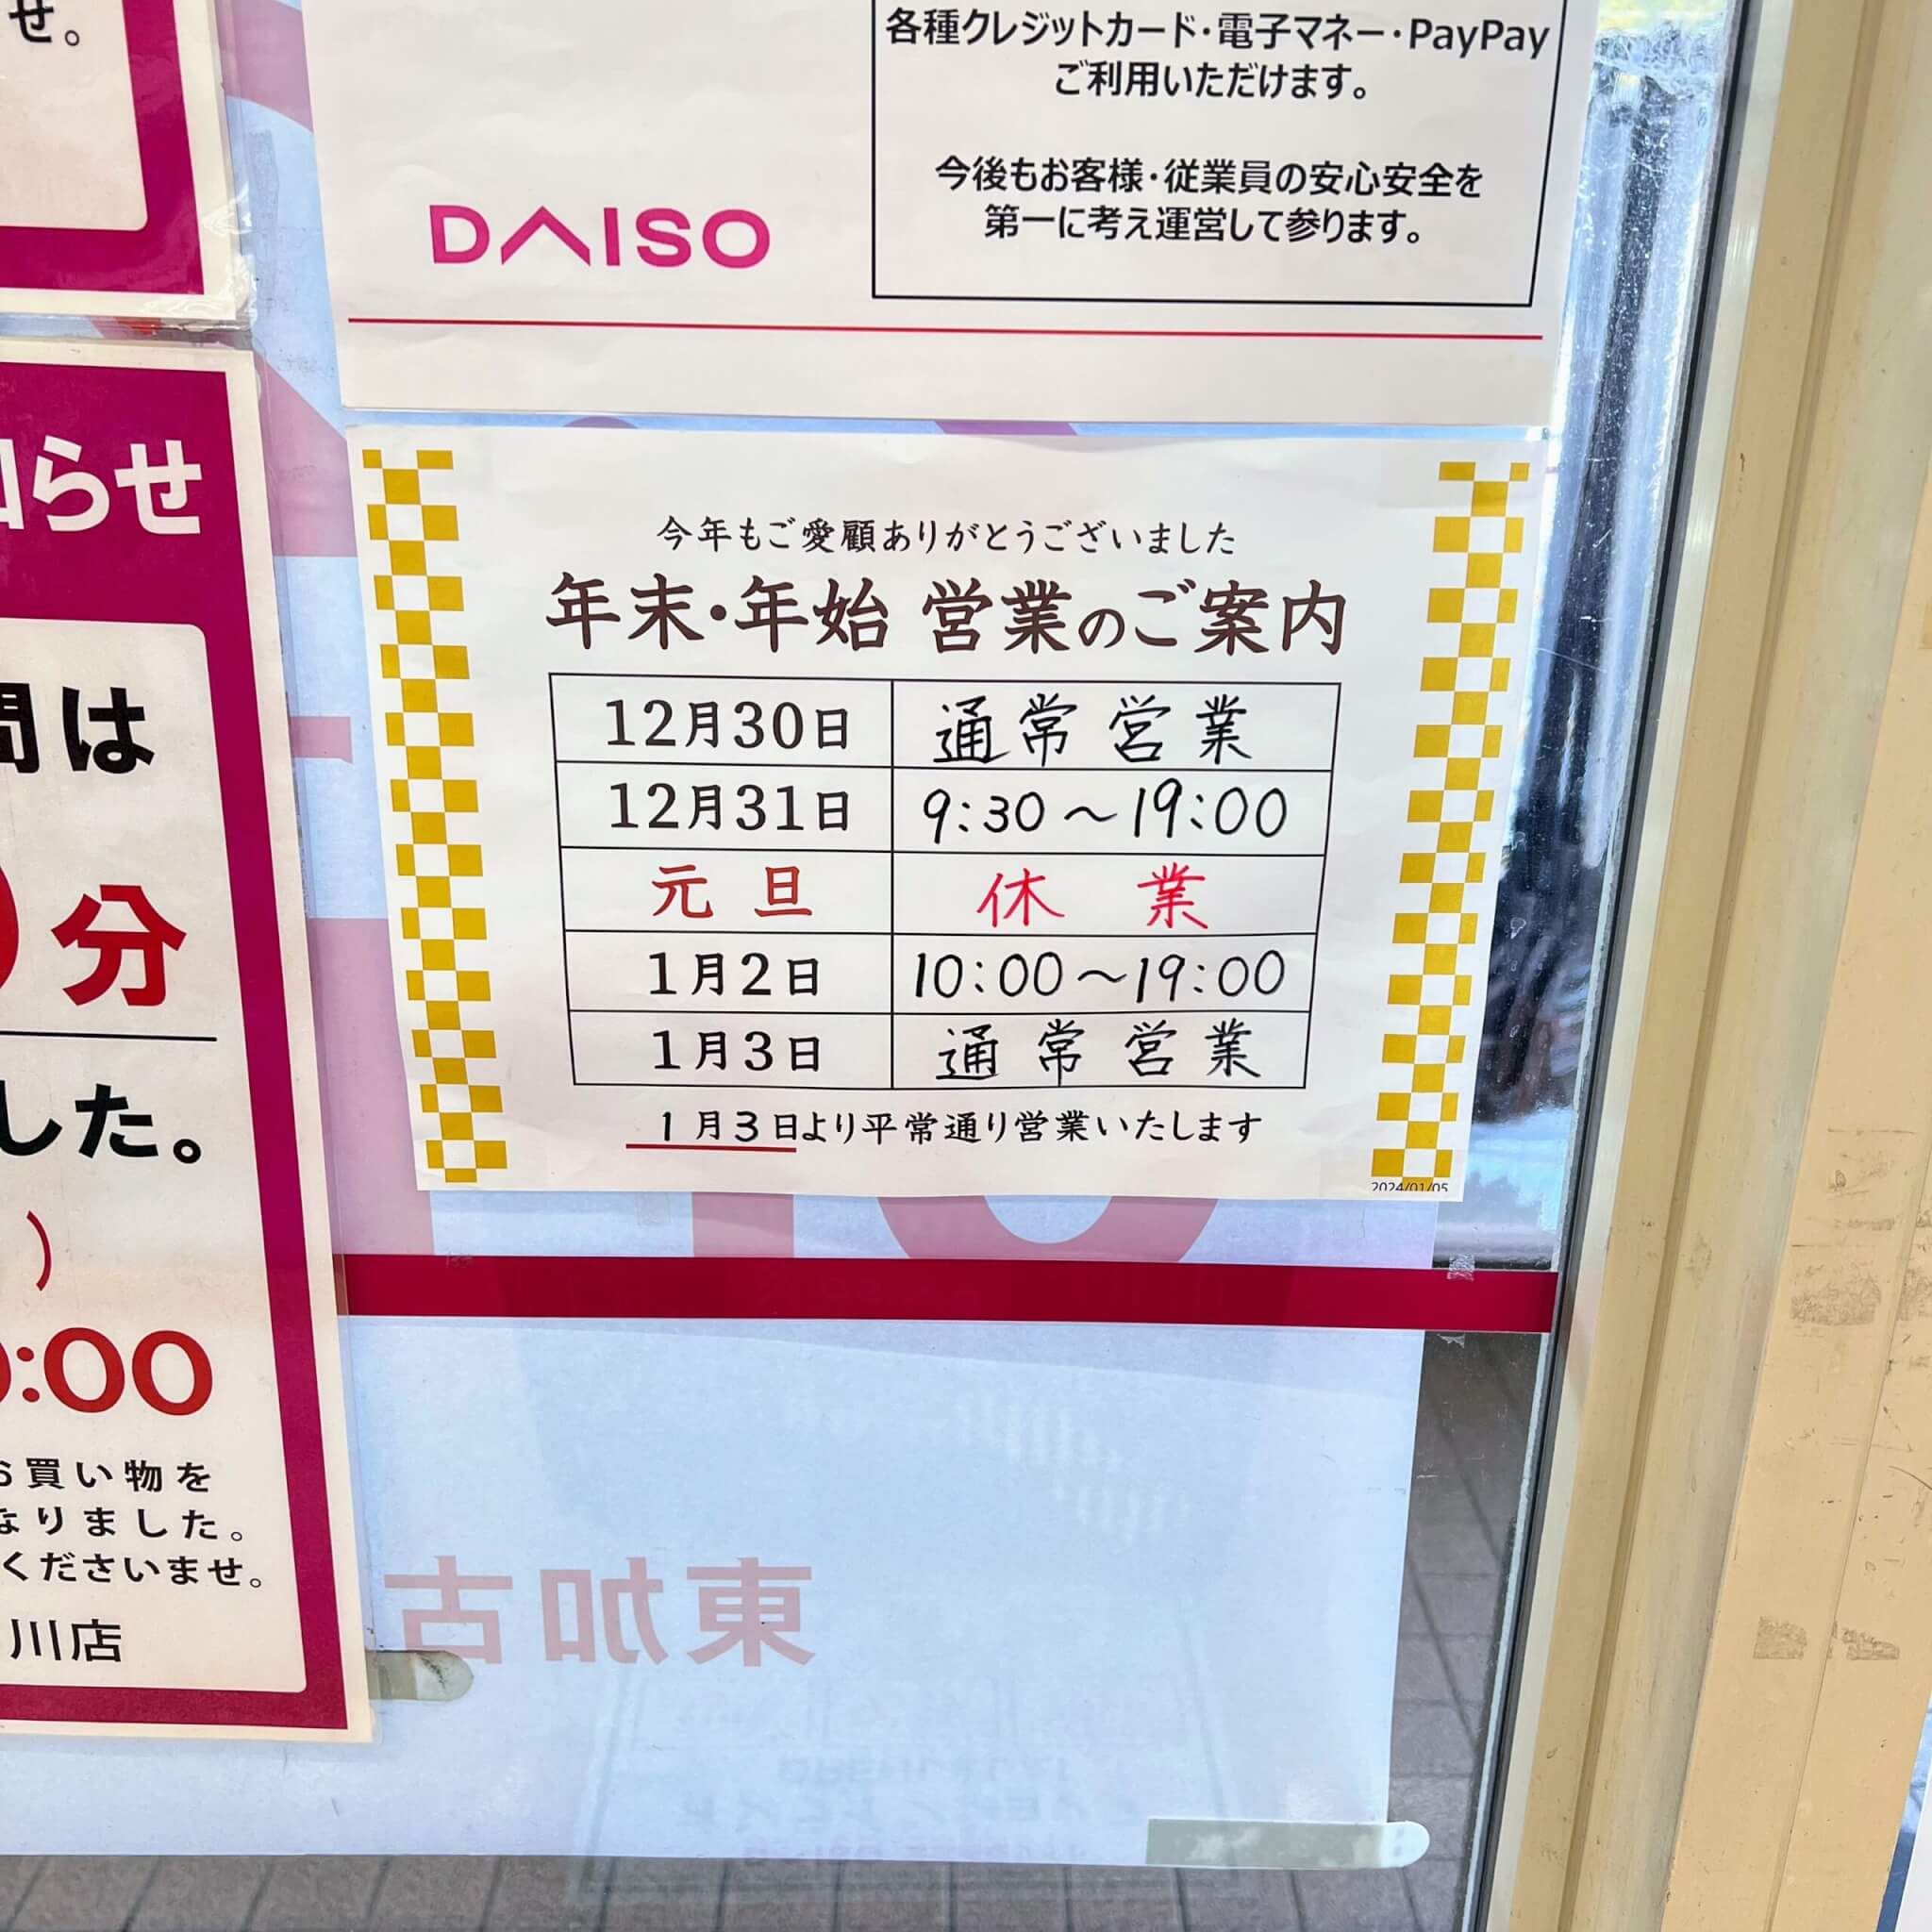 ダイソー東加古川店の年末年始休業情報